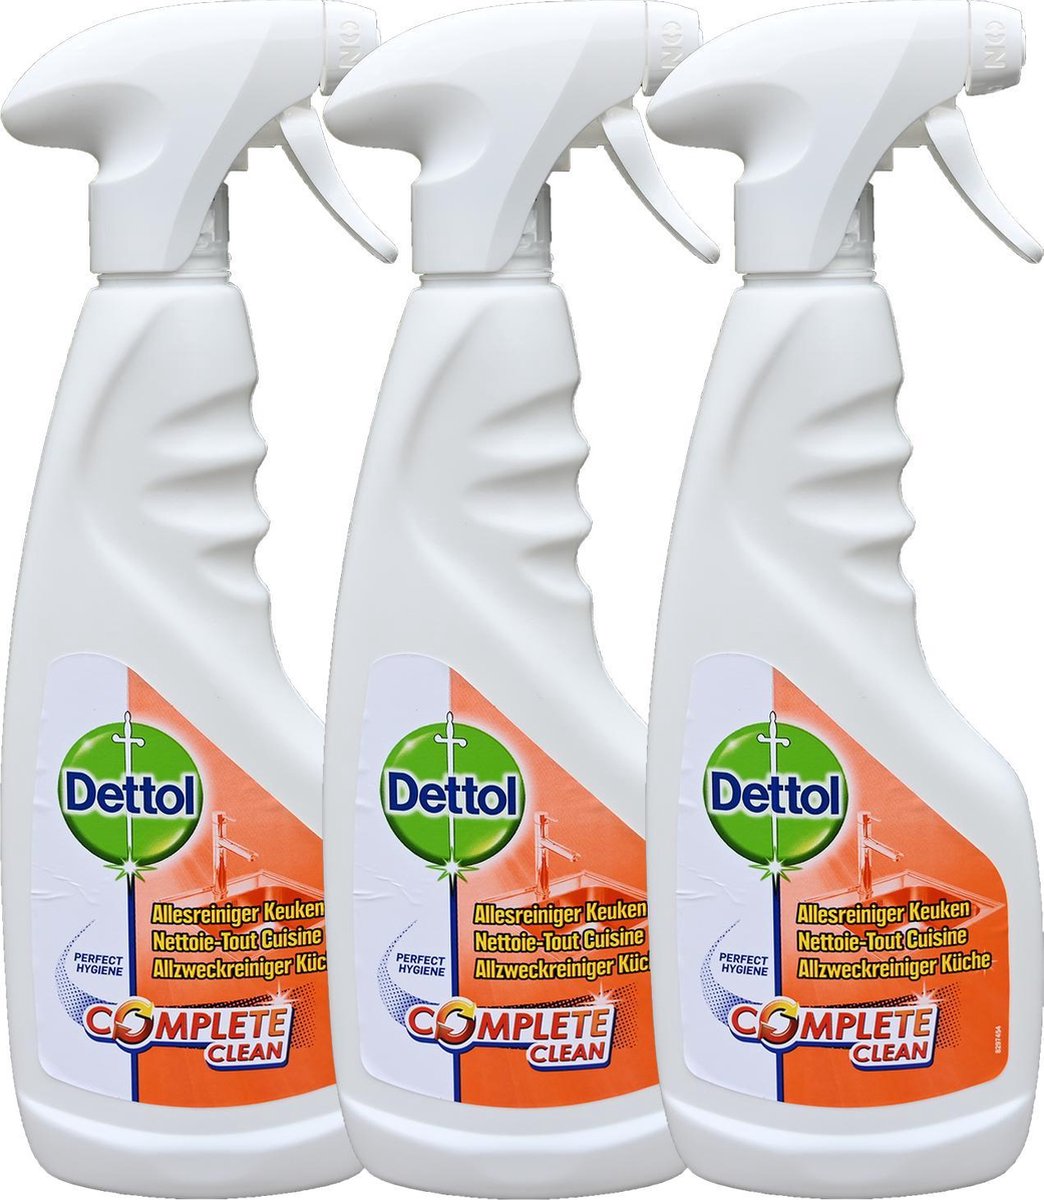 slepen opraken Ruwe olie Dettol spray keuken reiniger - 100% hygiene - 3 stuks | bol.com